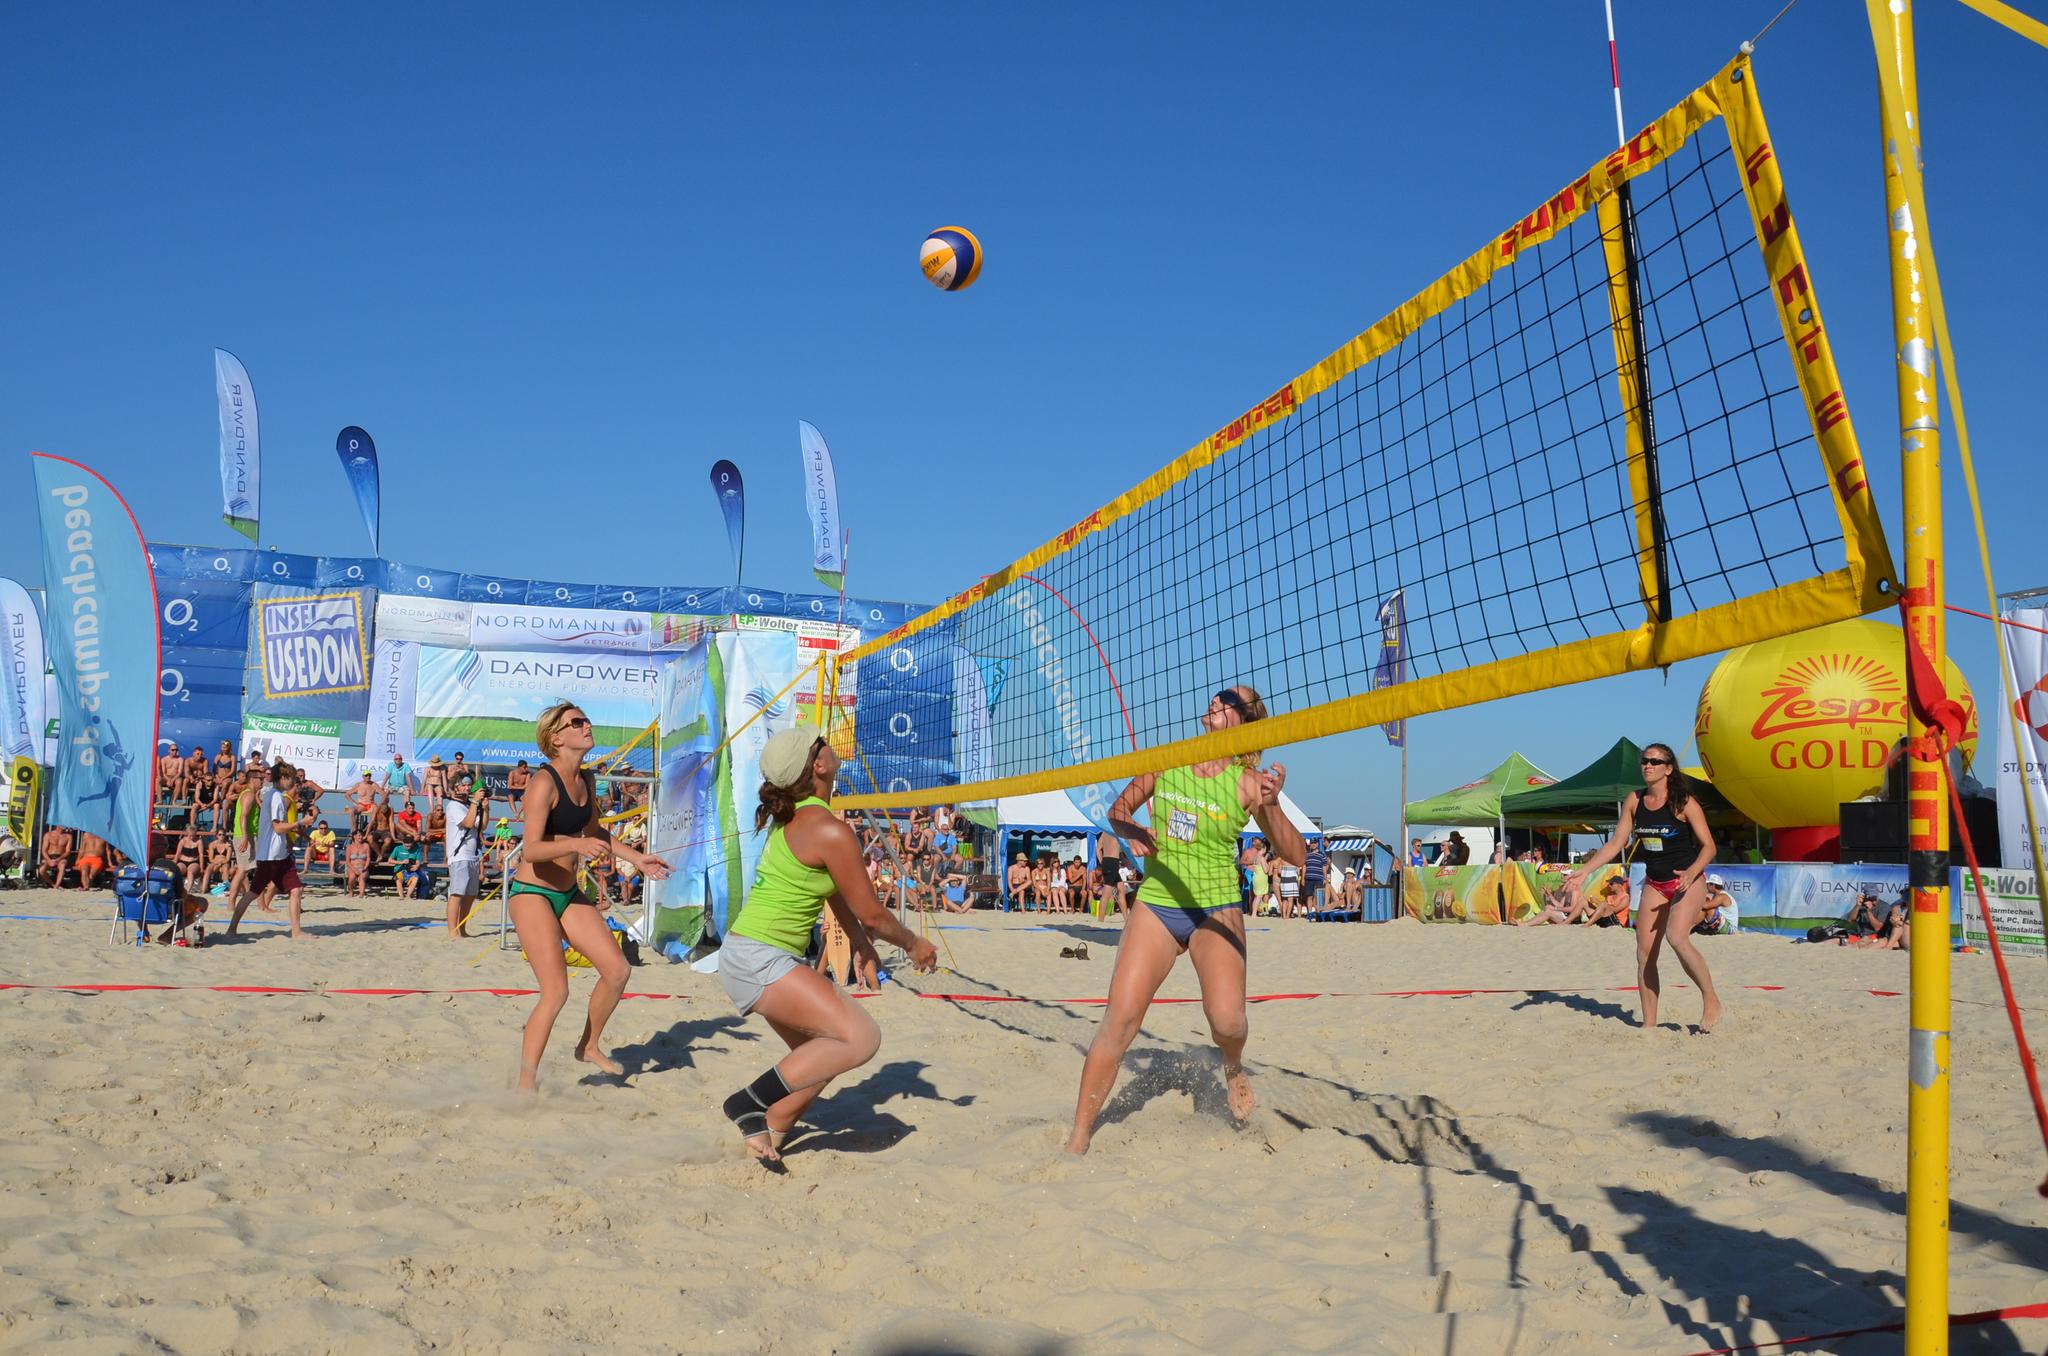 Mehrere Personen beim Volleyball spielen am Strand mit Publikum im HIntergrund